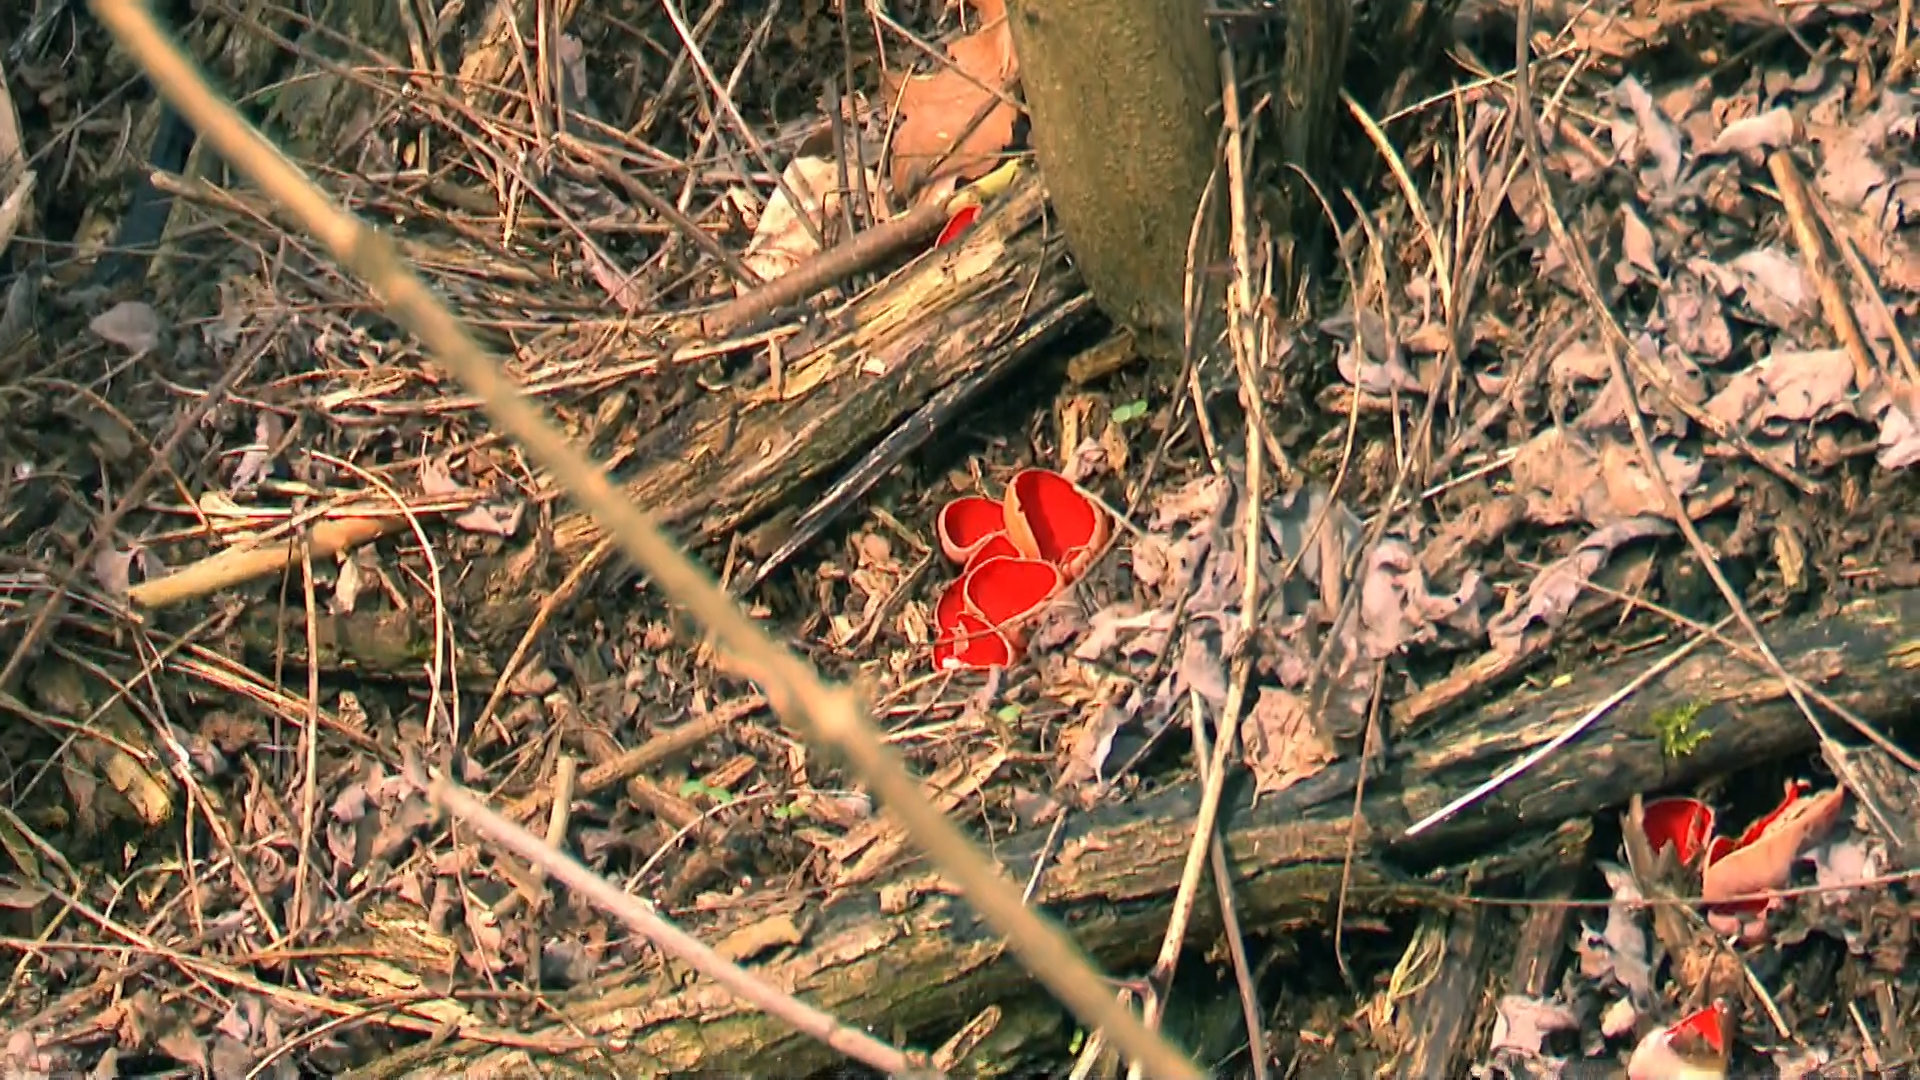 Houbaři najdou v českých lesích i fotogenickou a nejedlou houbu ohnivce rakouského.